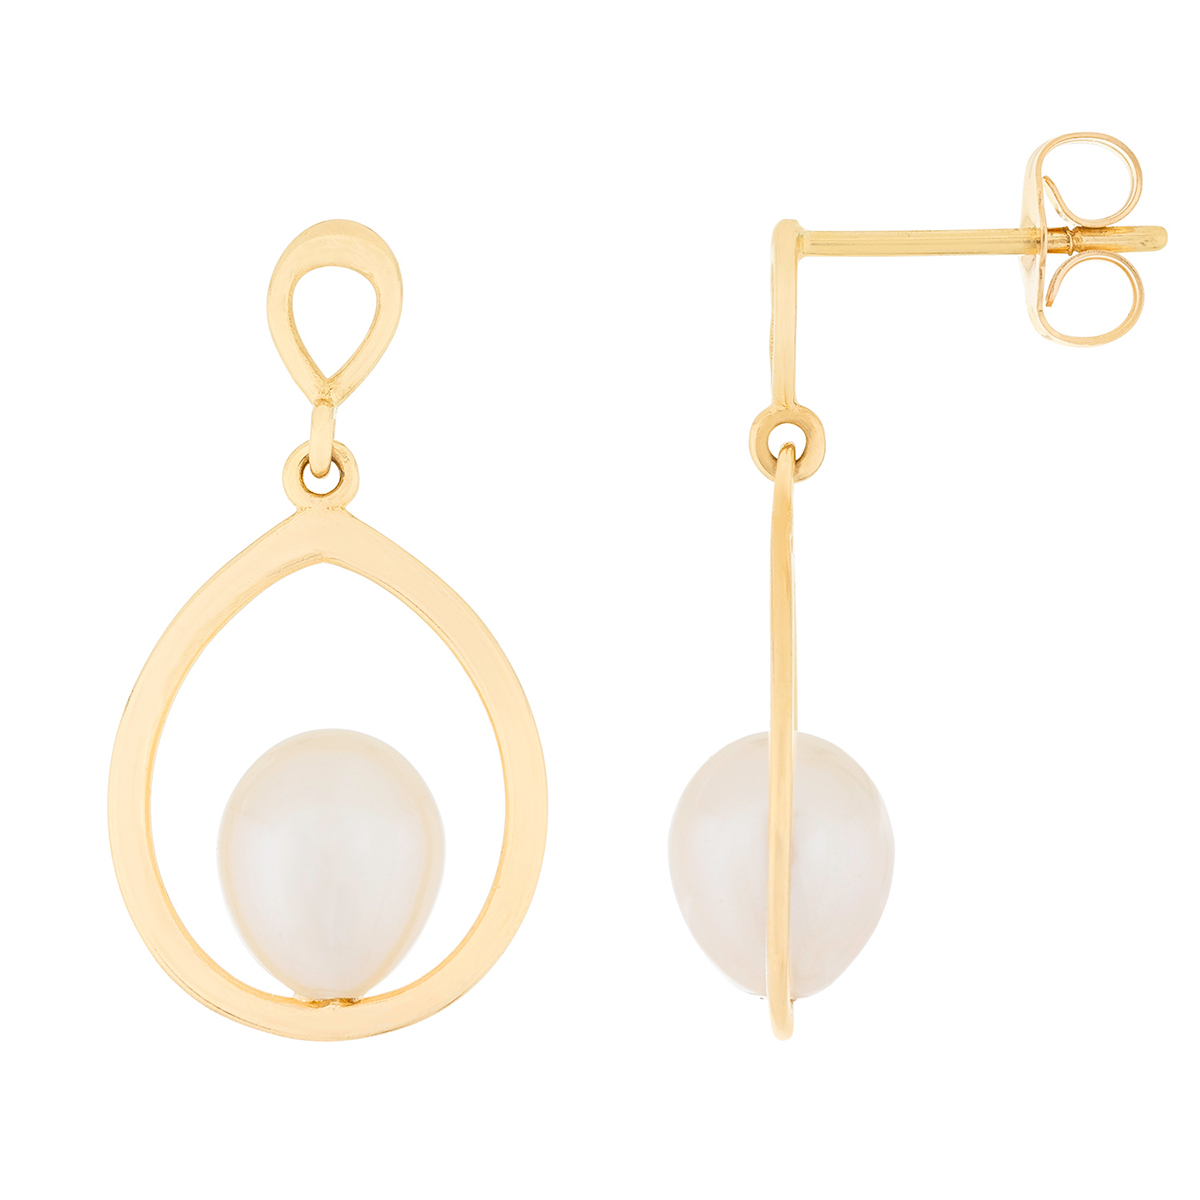 Splendid Pearls 14kt. Gold Dangling 7mm Pearl Earrings